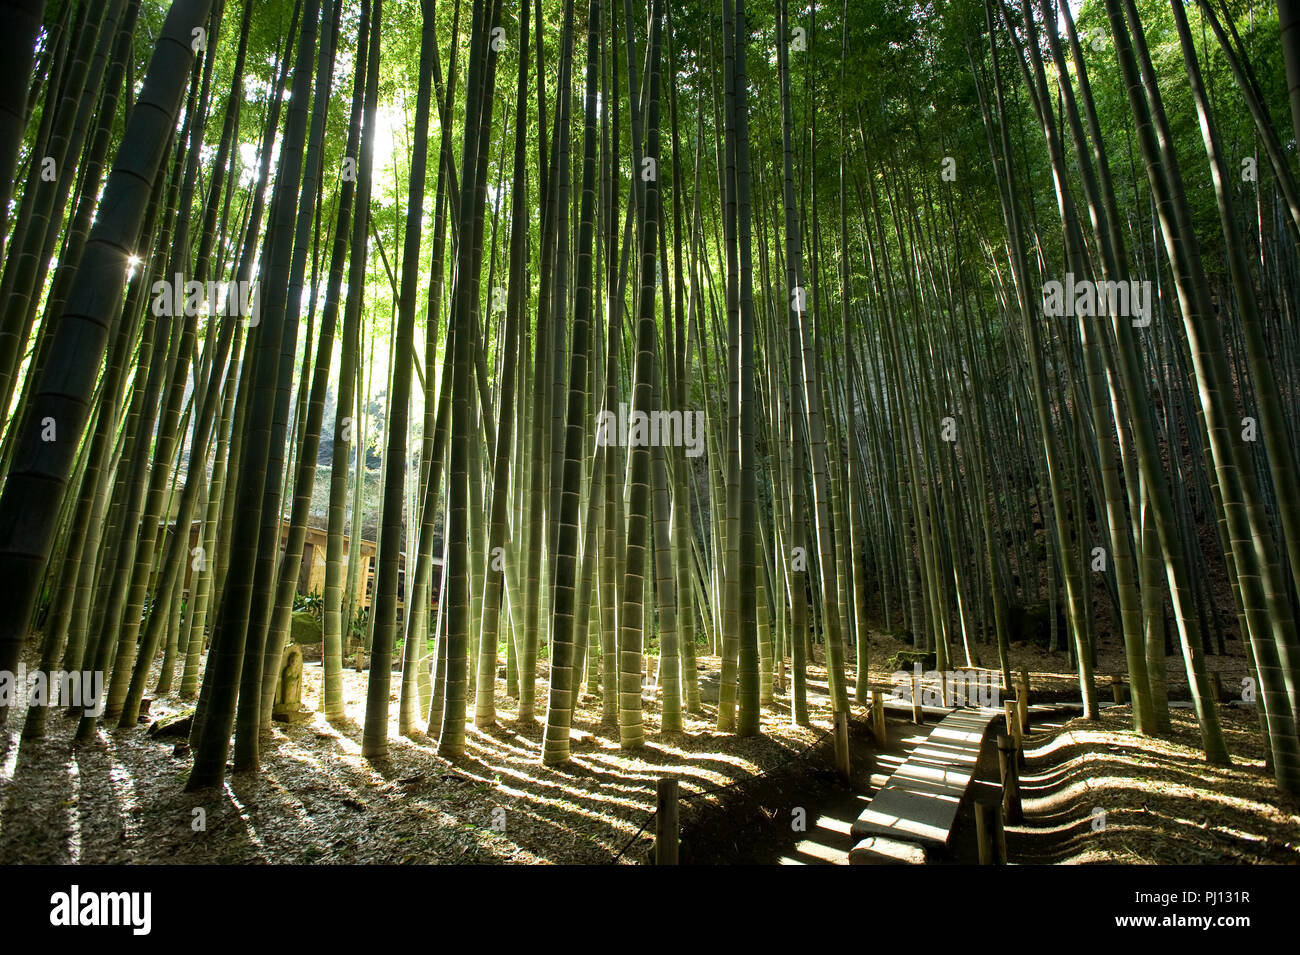 La foto mostra il boschetto di bambù nella motivazione della Hokoku-ji il tempio di Kamakura, Giappone il 25 gennaio 2012. Diverse regioni in tutta l'archipelag giapponese Foto Stock